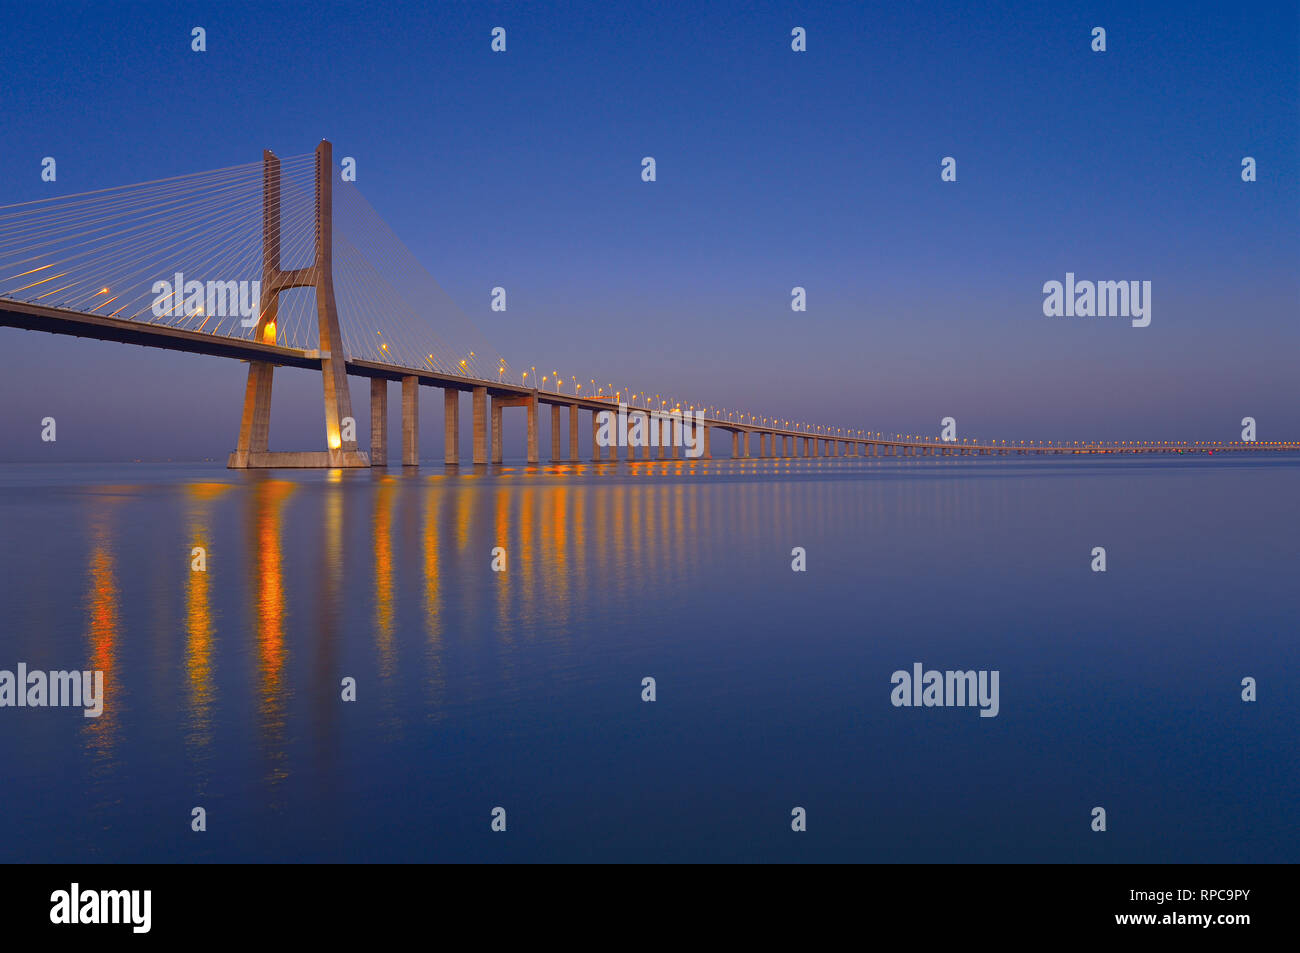 Elegante steel Bridge bei Nacht vorbei an Kilometer über große ruhige Fluss Wasser Stockfoto